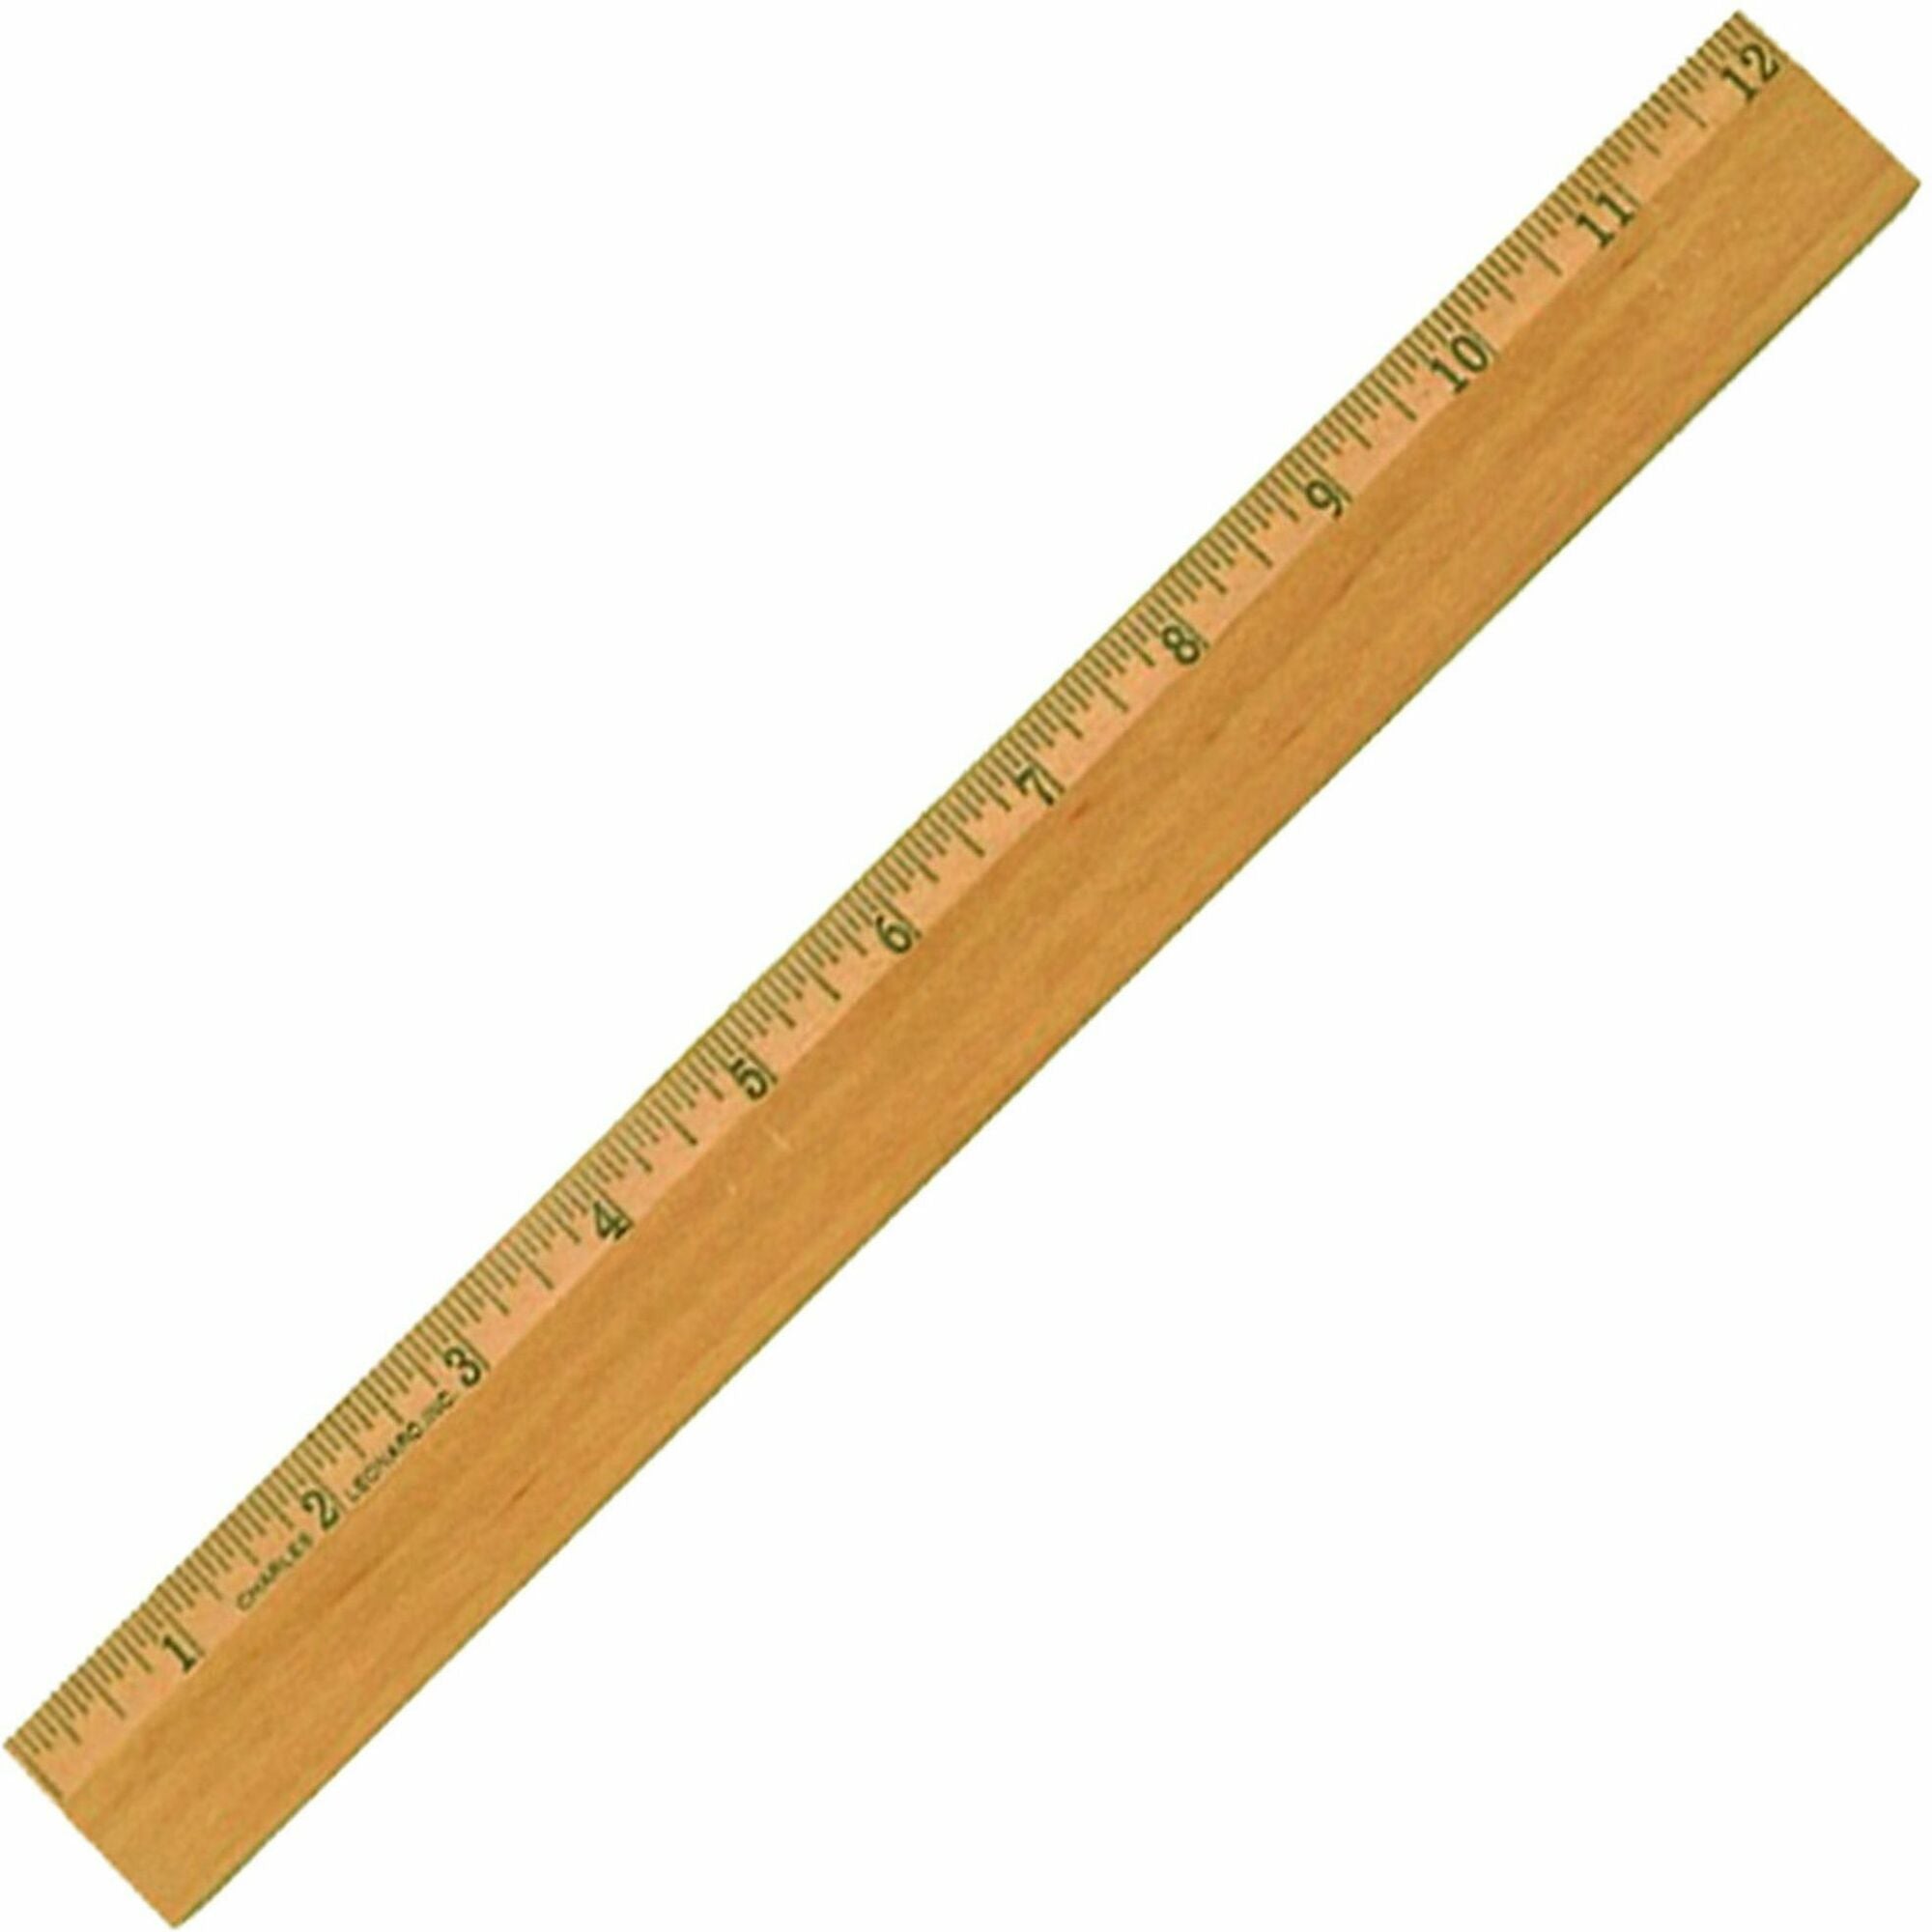 CLI Office Ruler - 12" Length 1.3" Width - Wood, Metal - 1 Each - Brown